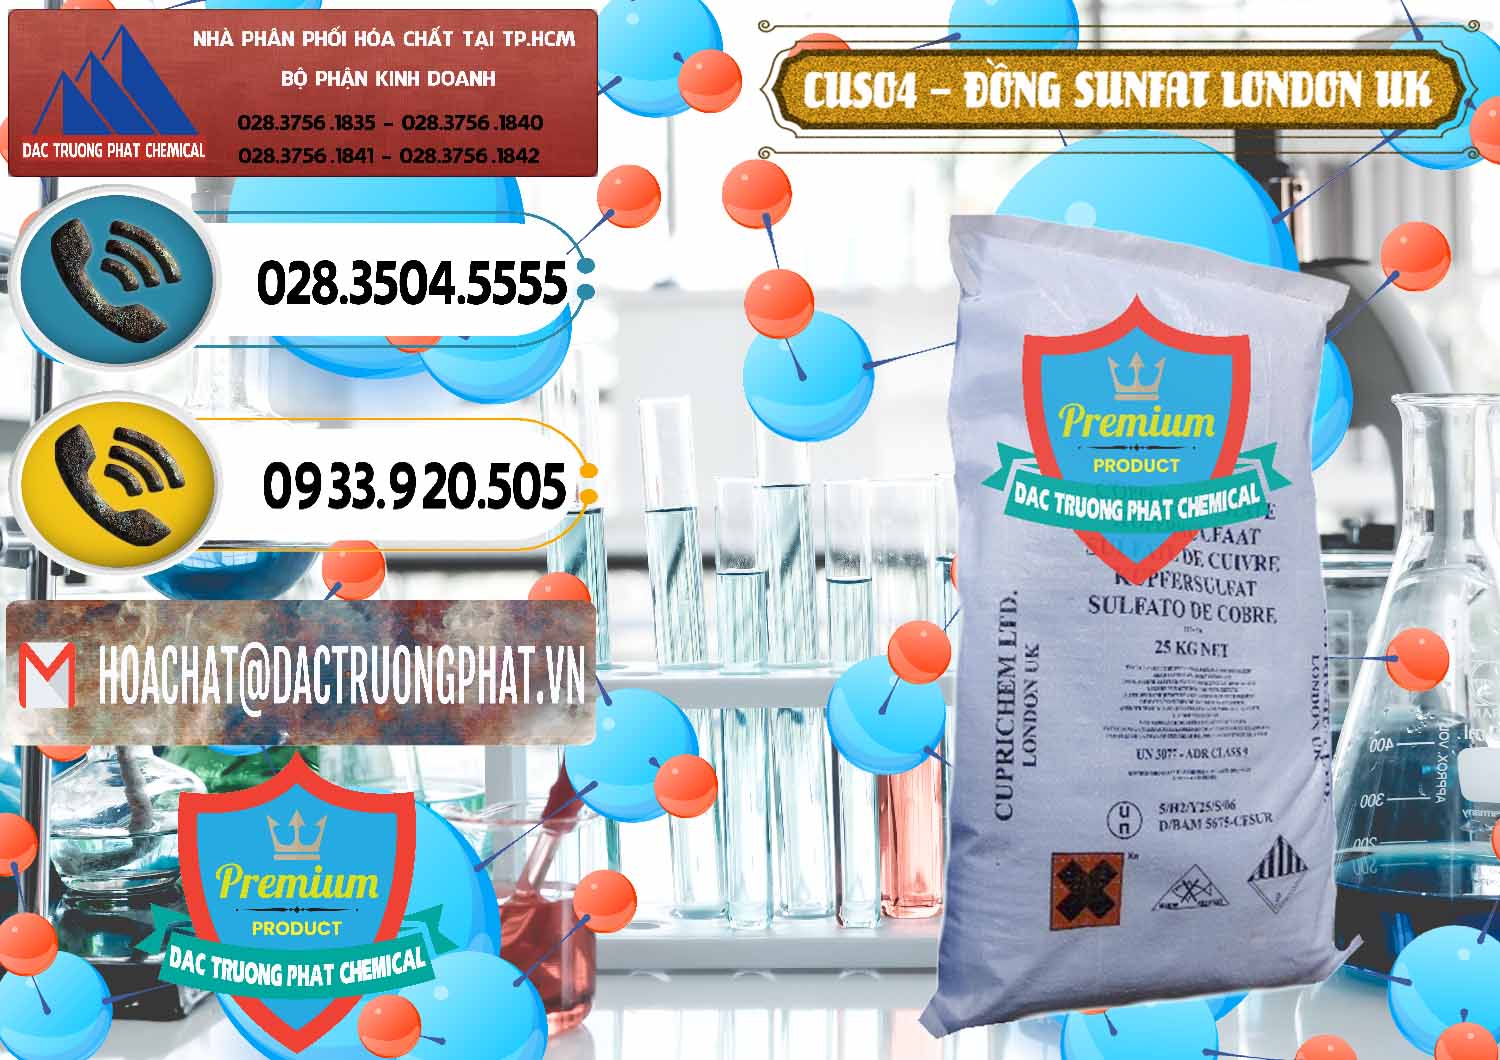 Nơi chuyên cung cấp _ bán CuSO4 – Đồng Sunfat Anh Uk Kingdoms - 0478 - Công ty chuyên kinh doanh - phân phối hóa chất tại TP.HCM - hoachatdetnhuom.vn